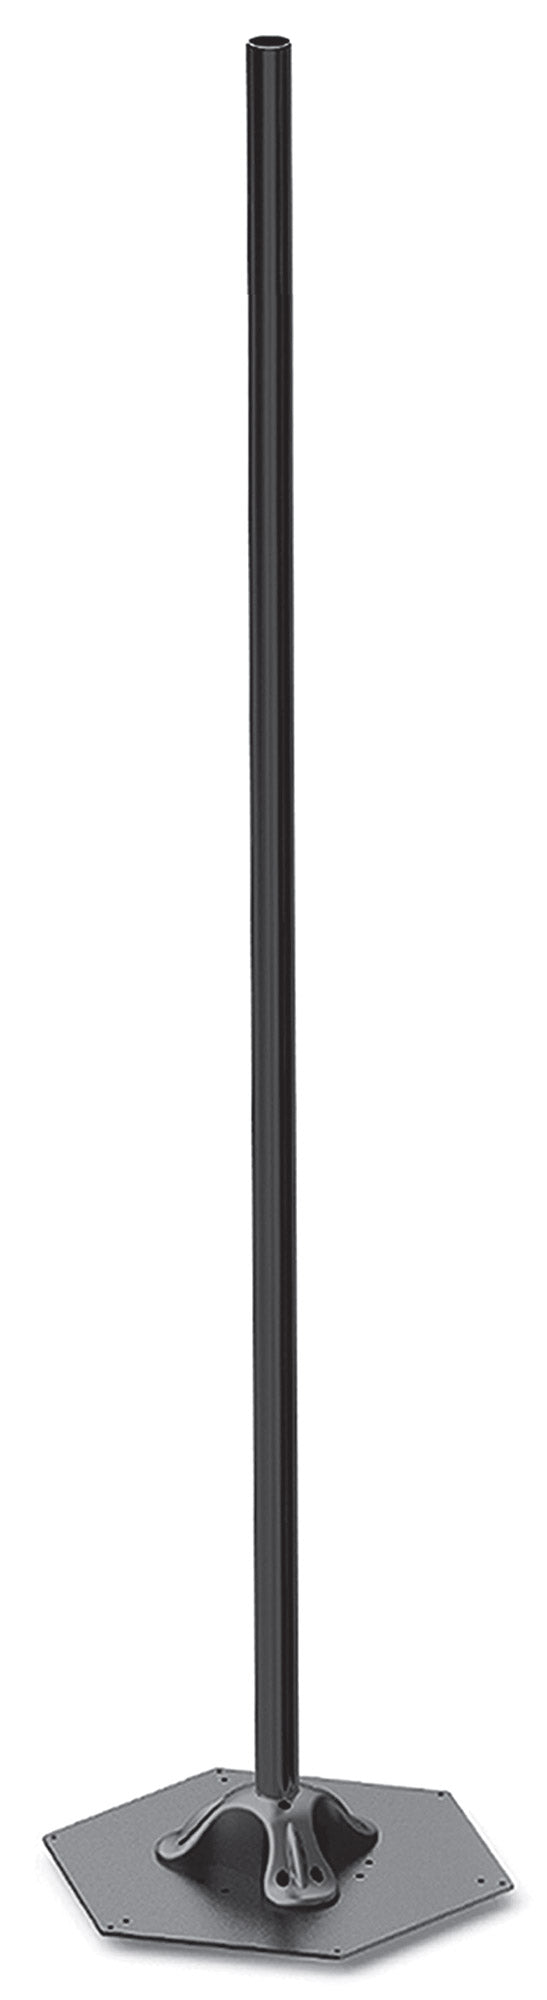 prezzo Elegance Pole H214 cm pour Lampes Chauffantes Electriques Moel 4464 Noir